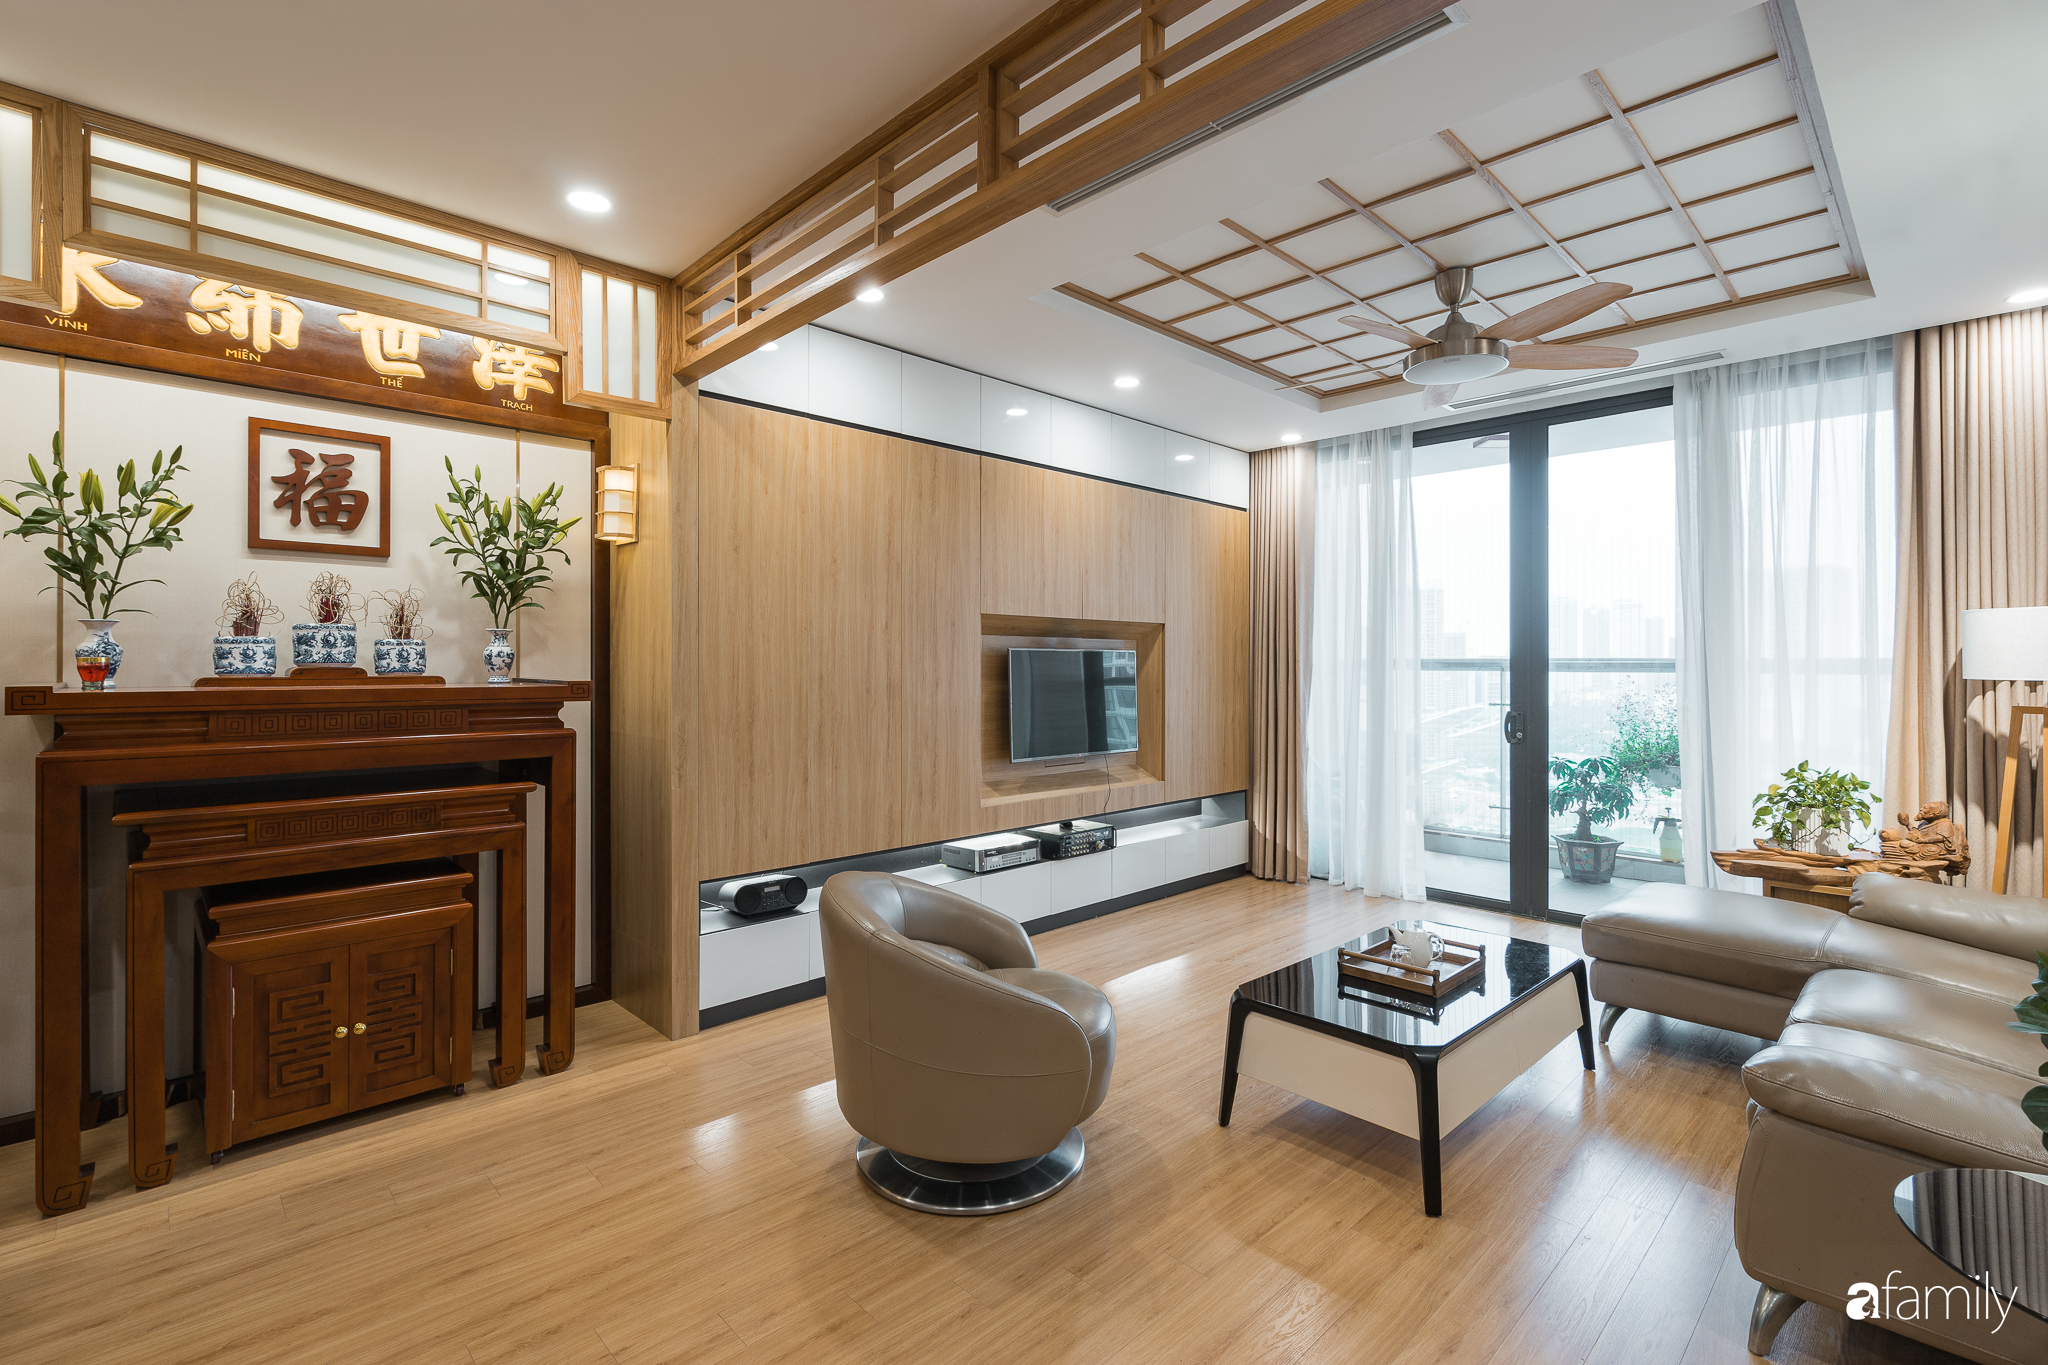 Căn hộ 120m² phong cách Nhật Bản - một không gian sống đầy ấn tượng với sự kết hợp hoàn hảo giữa ánh sáng và màu sắc. Thiết kế phòng khách được trang trí bằng những mảnh tranh được làm từ vải, tạo ra một không gian sống hiện đại và ấm cúng. Đến với căn hộ này, bạn sẽ có cơ hội khám phá những điều tuyệt vời mà nội thất phong cách Nhật Bản mang lại.